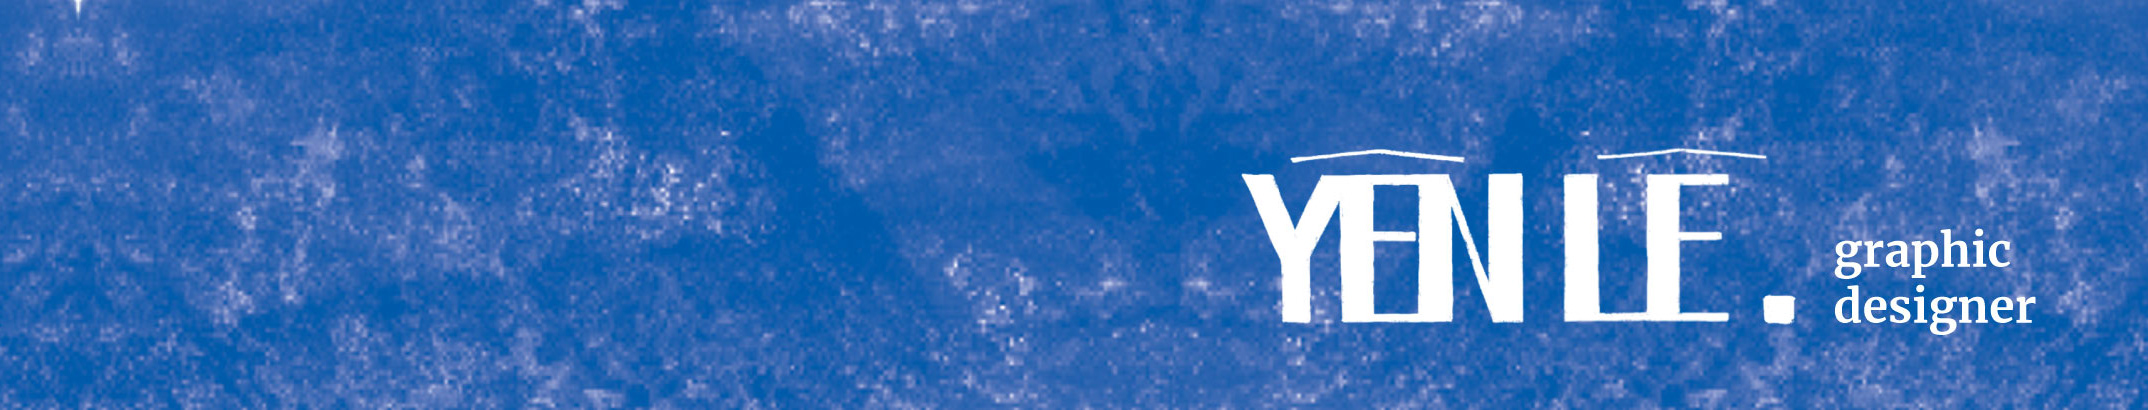 Yen Le's profile banner